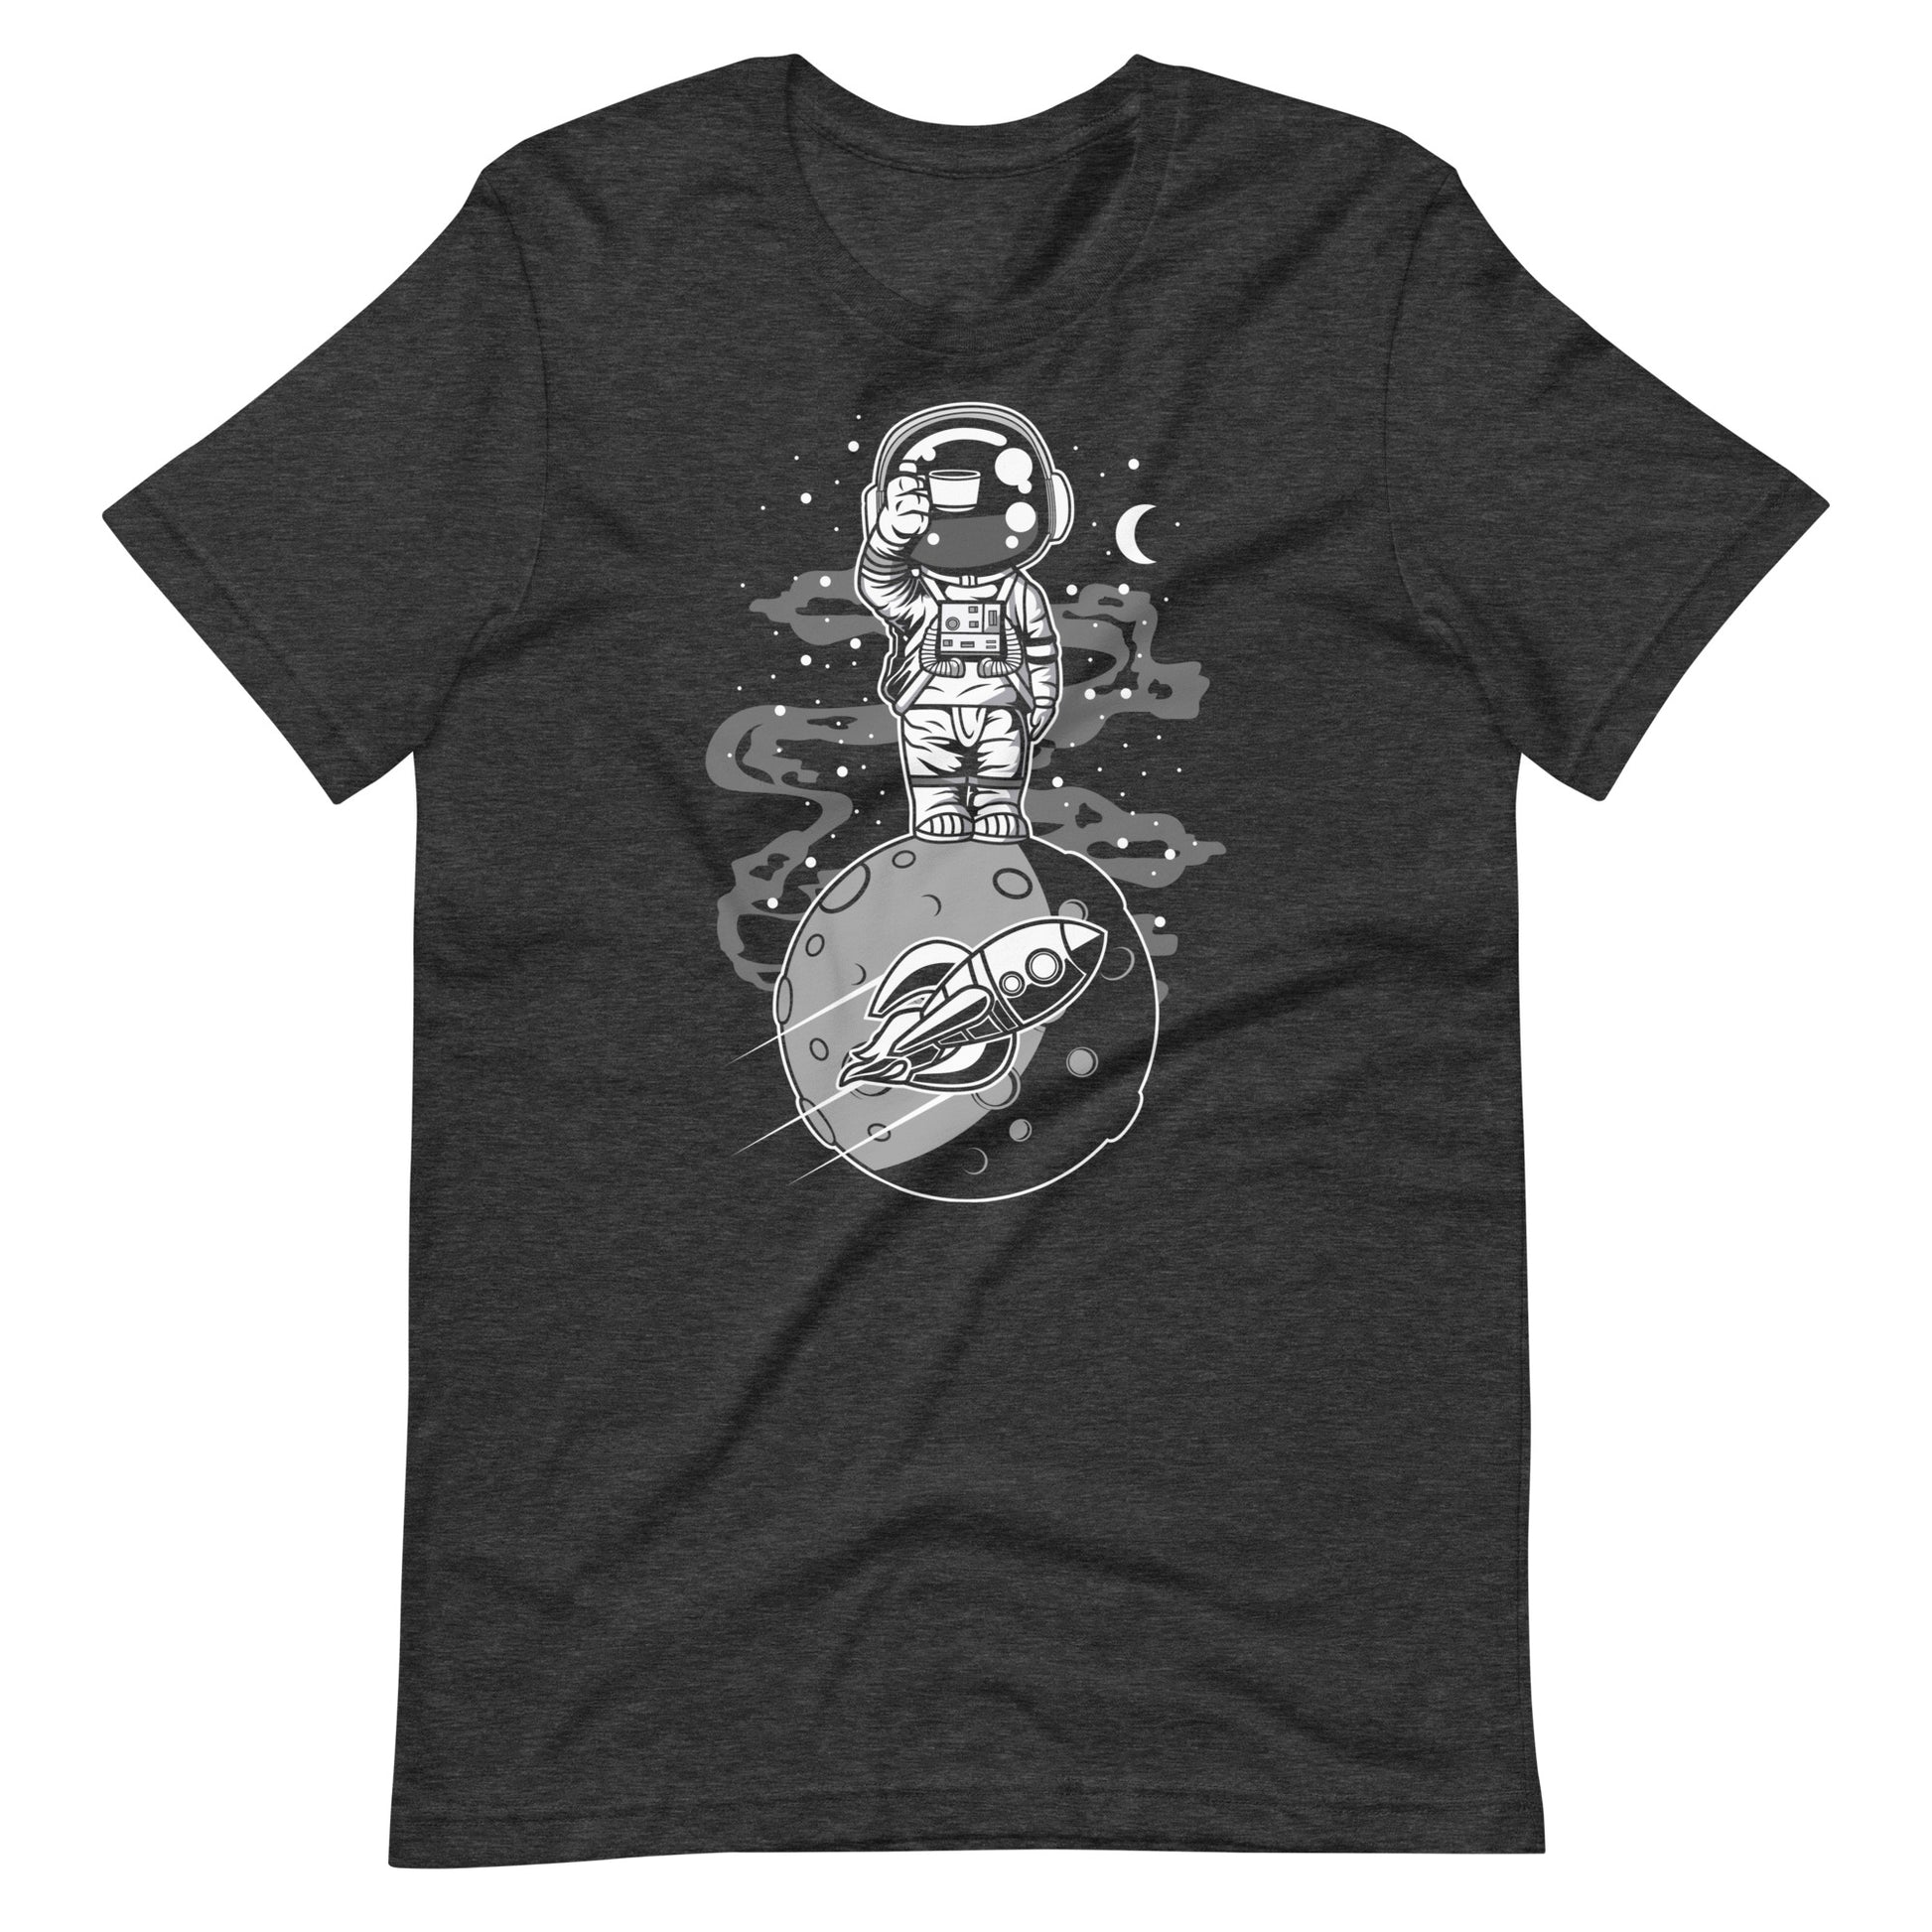 Astronaut Standing on the Moon - Men's t-shirt - Dark Grey Heather Front